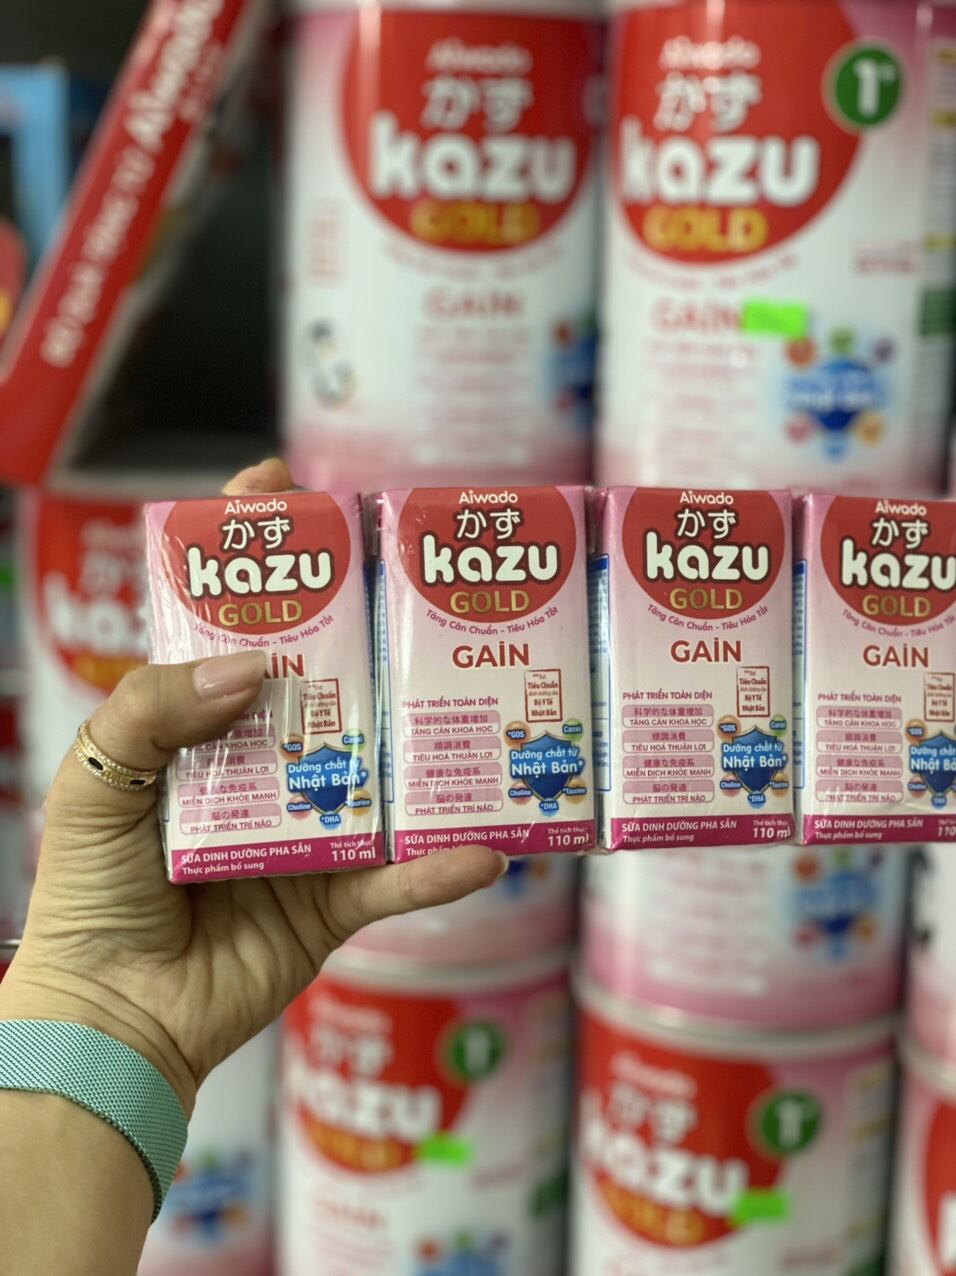 Sữa bột pha sẵn kazu gold gain 110ml lốc 4 hộp - ảnh sản phẩm 2